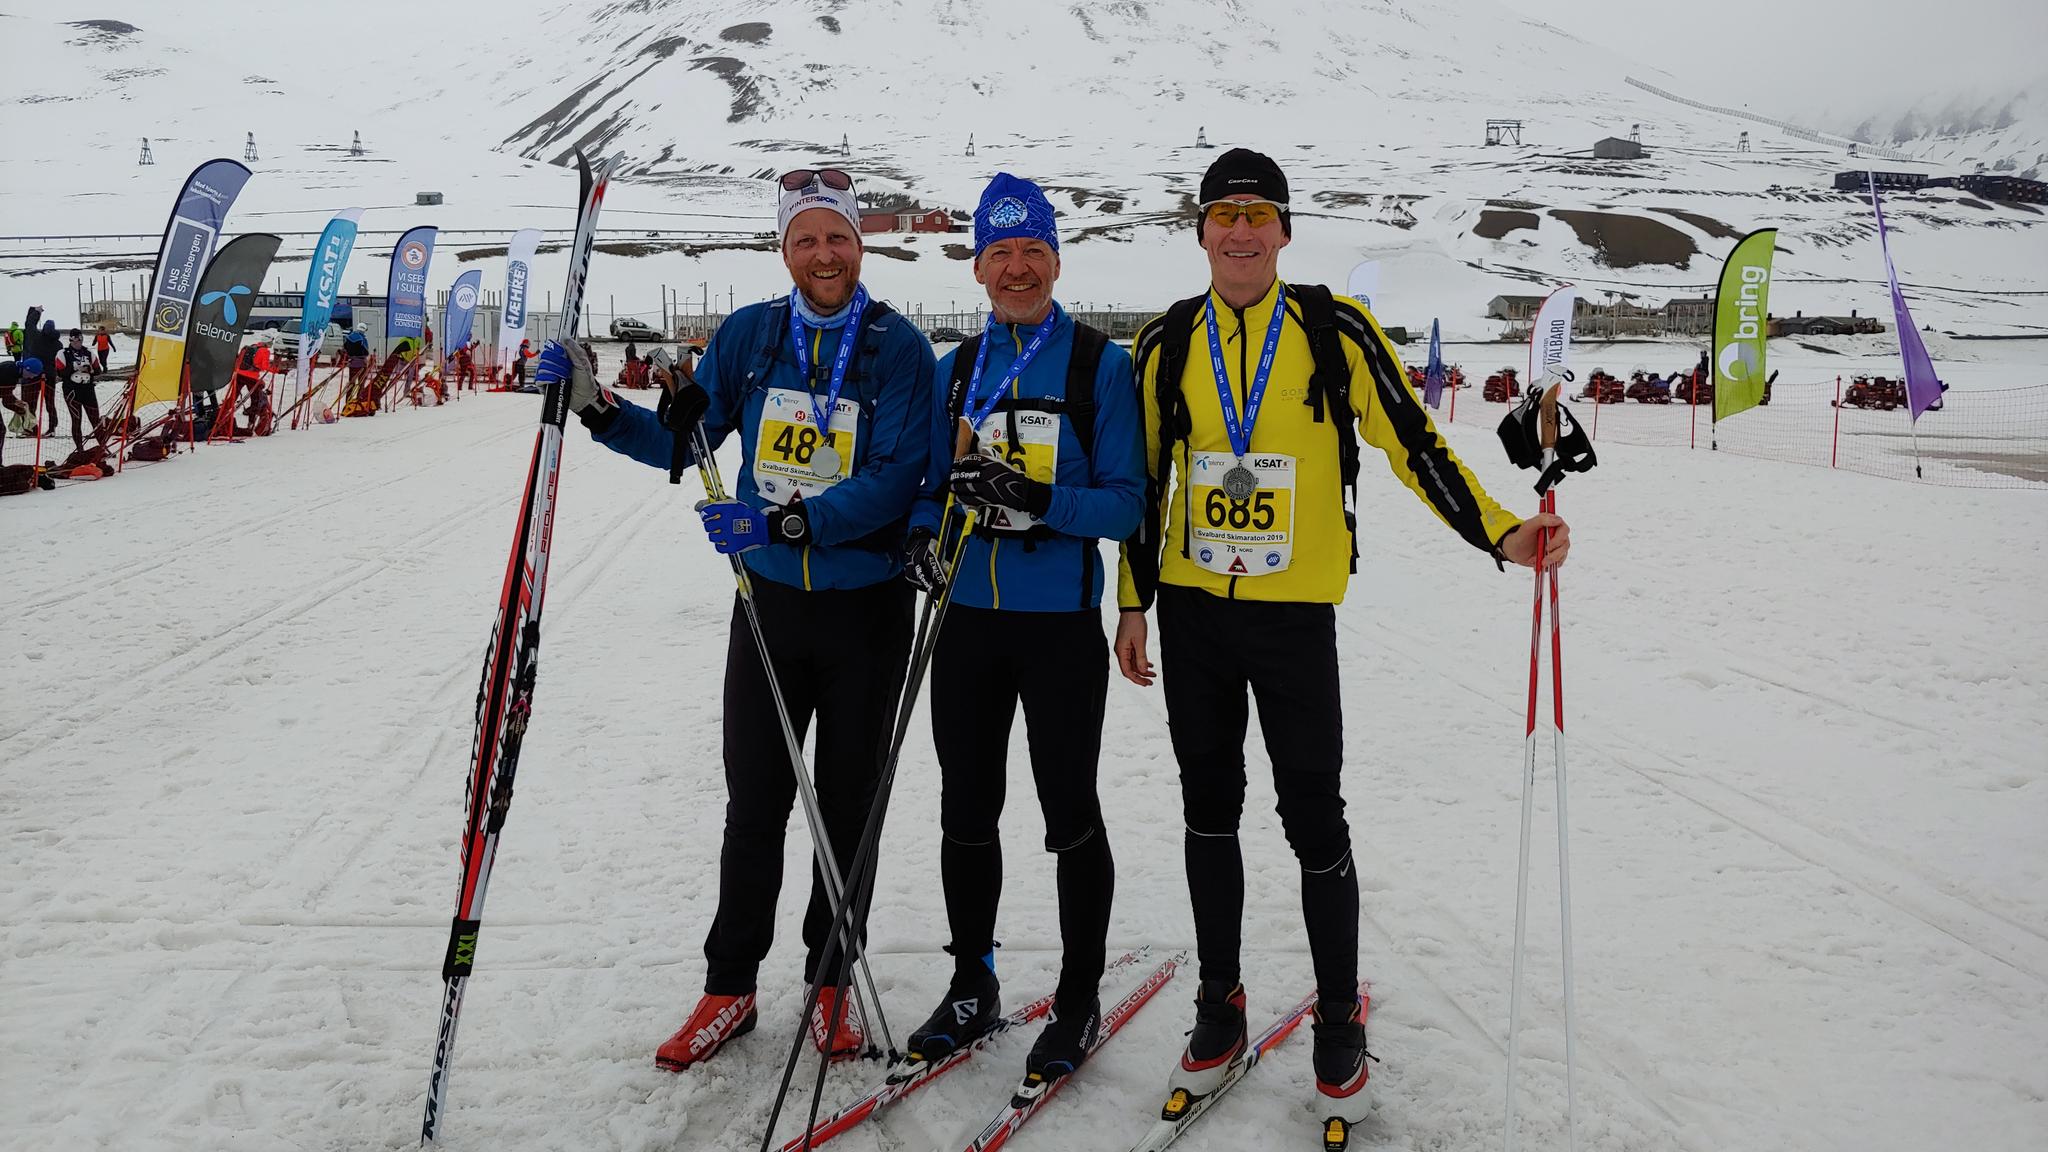 Streikfaste skiløpere på Svalbard: De svenske skituristene må vente fem dager på å komme hjem som følge av SAS-streiken etter å ha deltatt i skimaraton på Svalbard. Fra venstre Andreas Anderson, Jörgen Modig og Arne Strid.